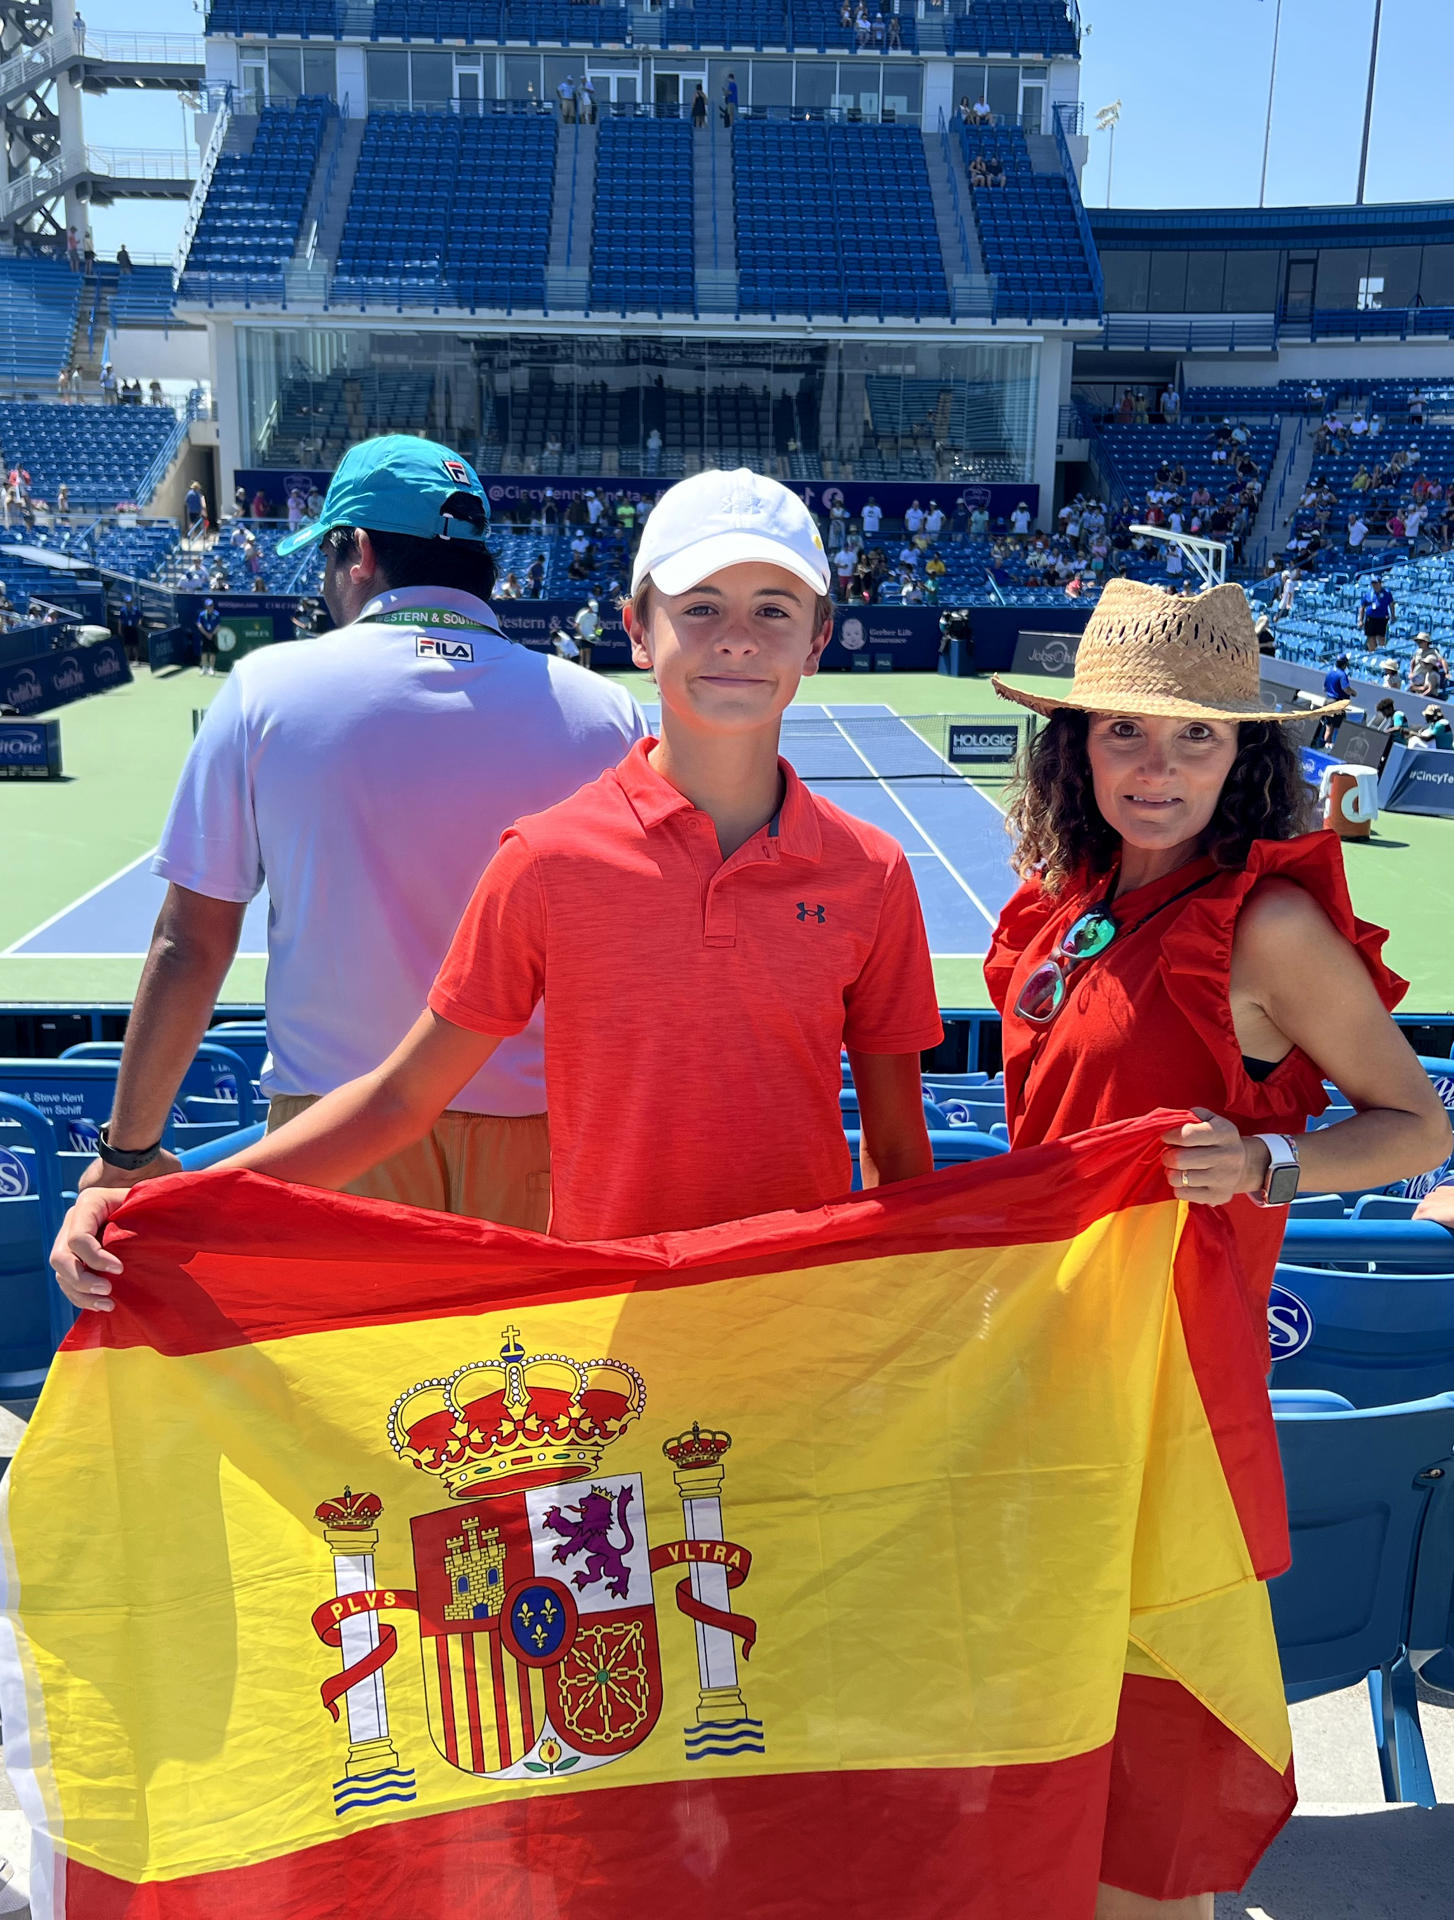 Patricia Ortiz y John Torrant posan con una bandera española antes del inicio de la final del Masters 1.000 de Cincinnati hoy, en Mason, Cincinnati, estado de Ohio (EE.UU.). EFE/Andrea Montolivo